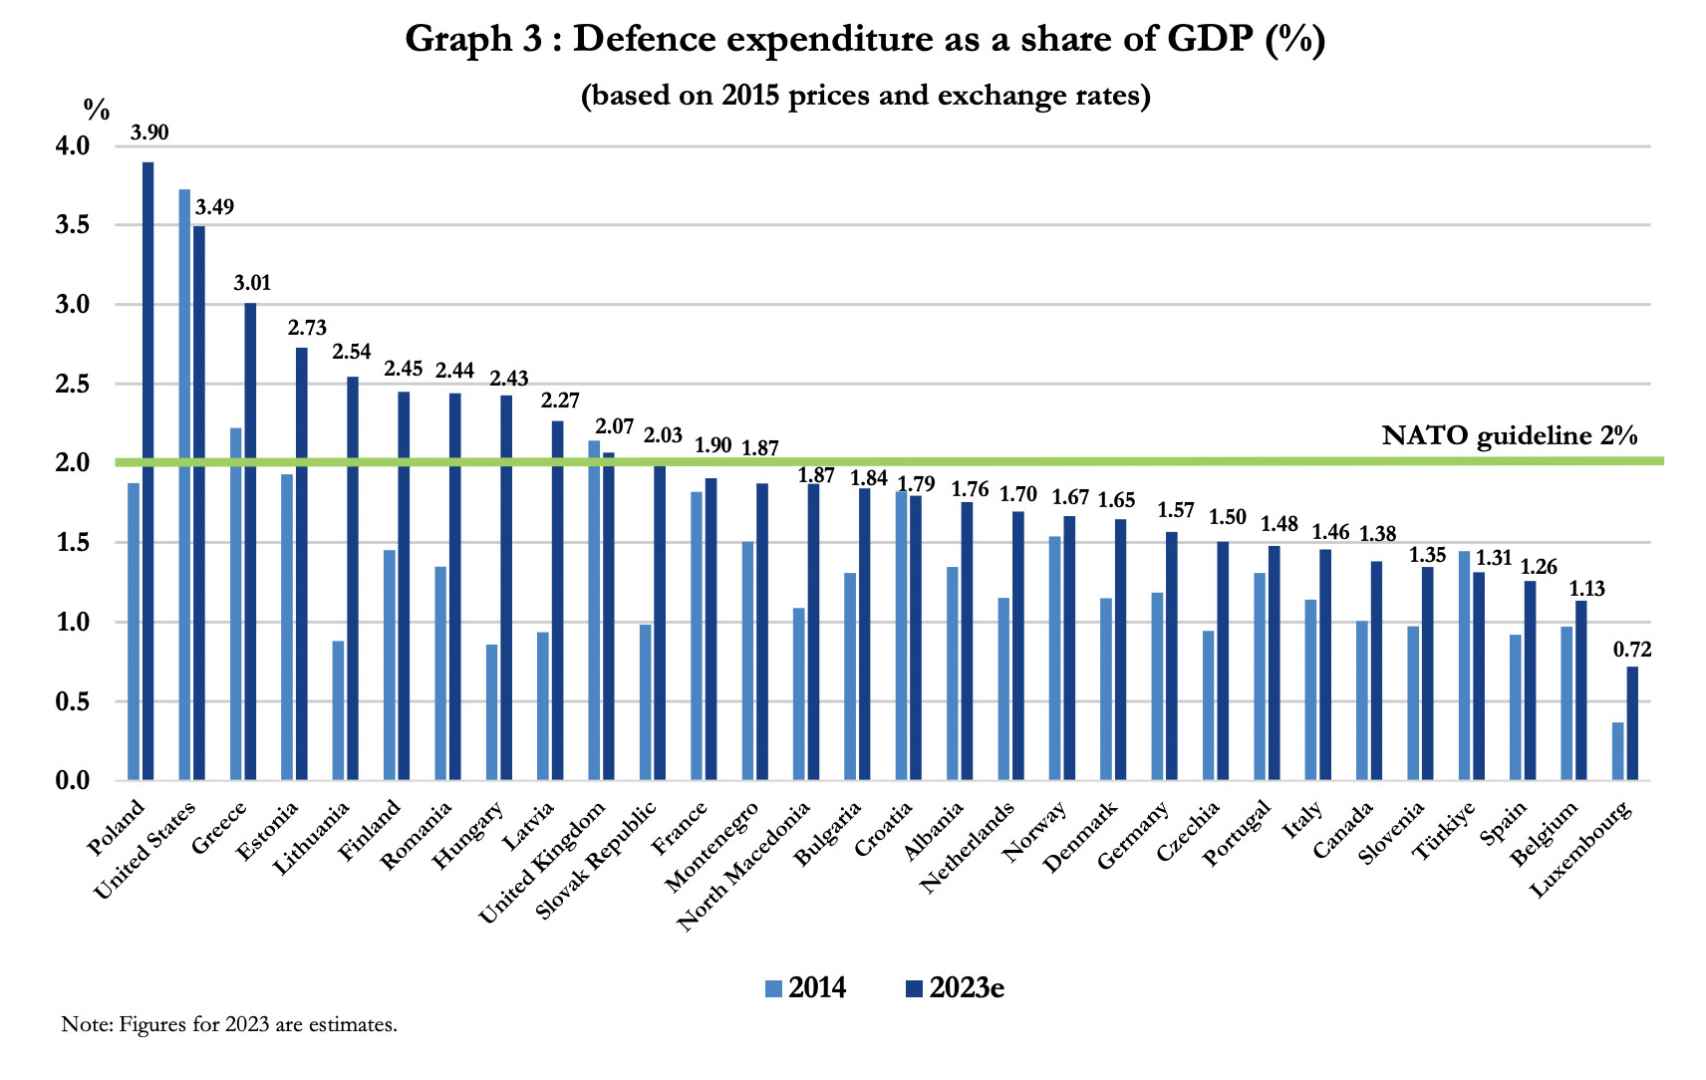 Gasto en defensa de los países de la OTAN (en % del PIB)